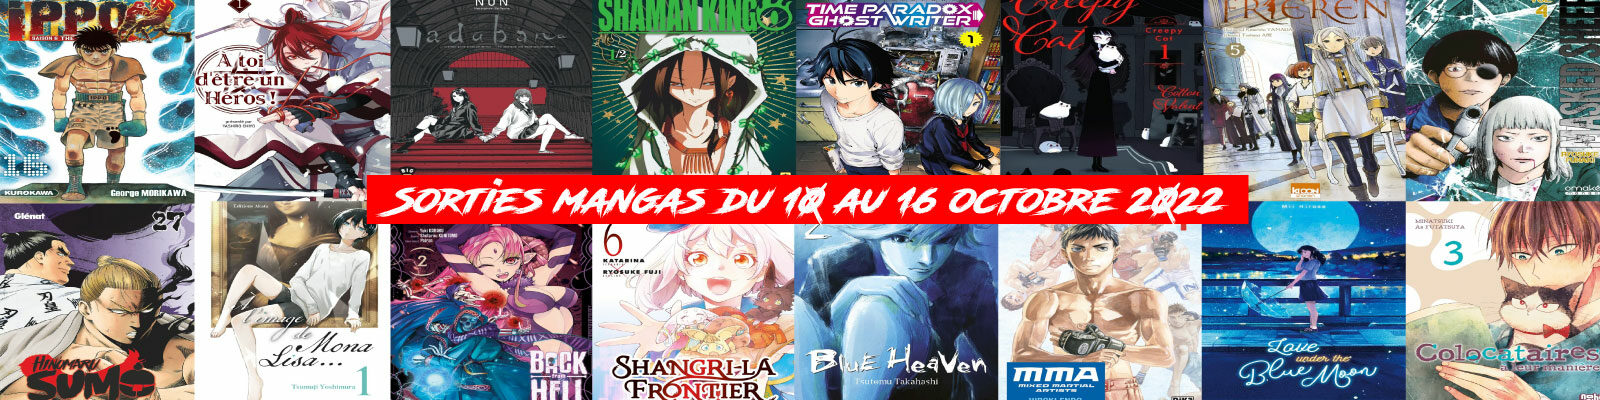 Sorties mangas-du-10-au-16-octobre-2022-2